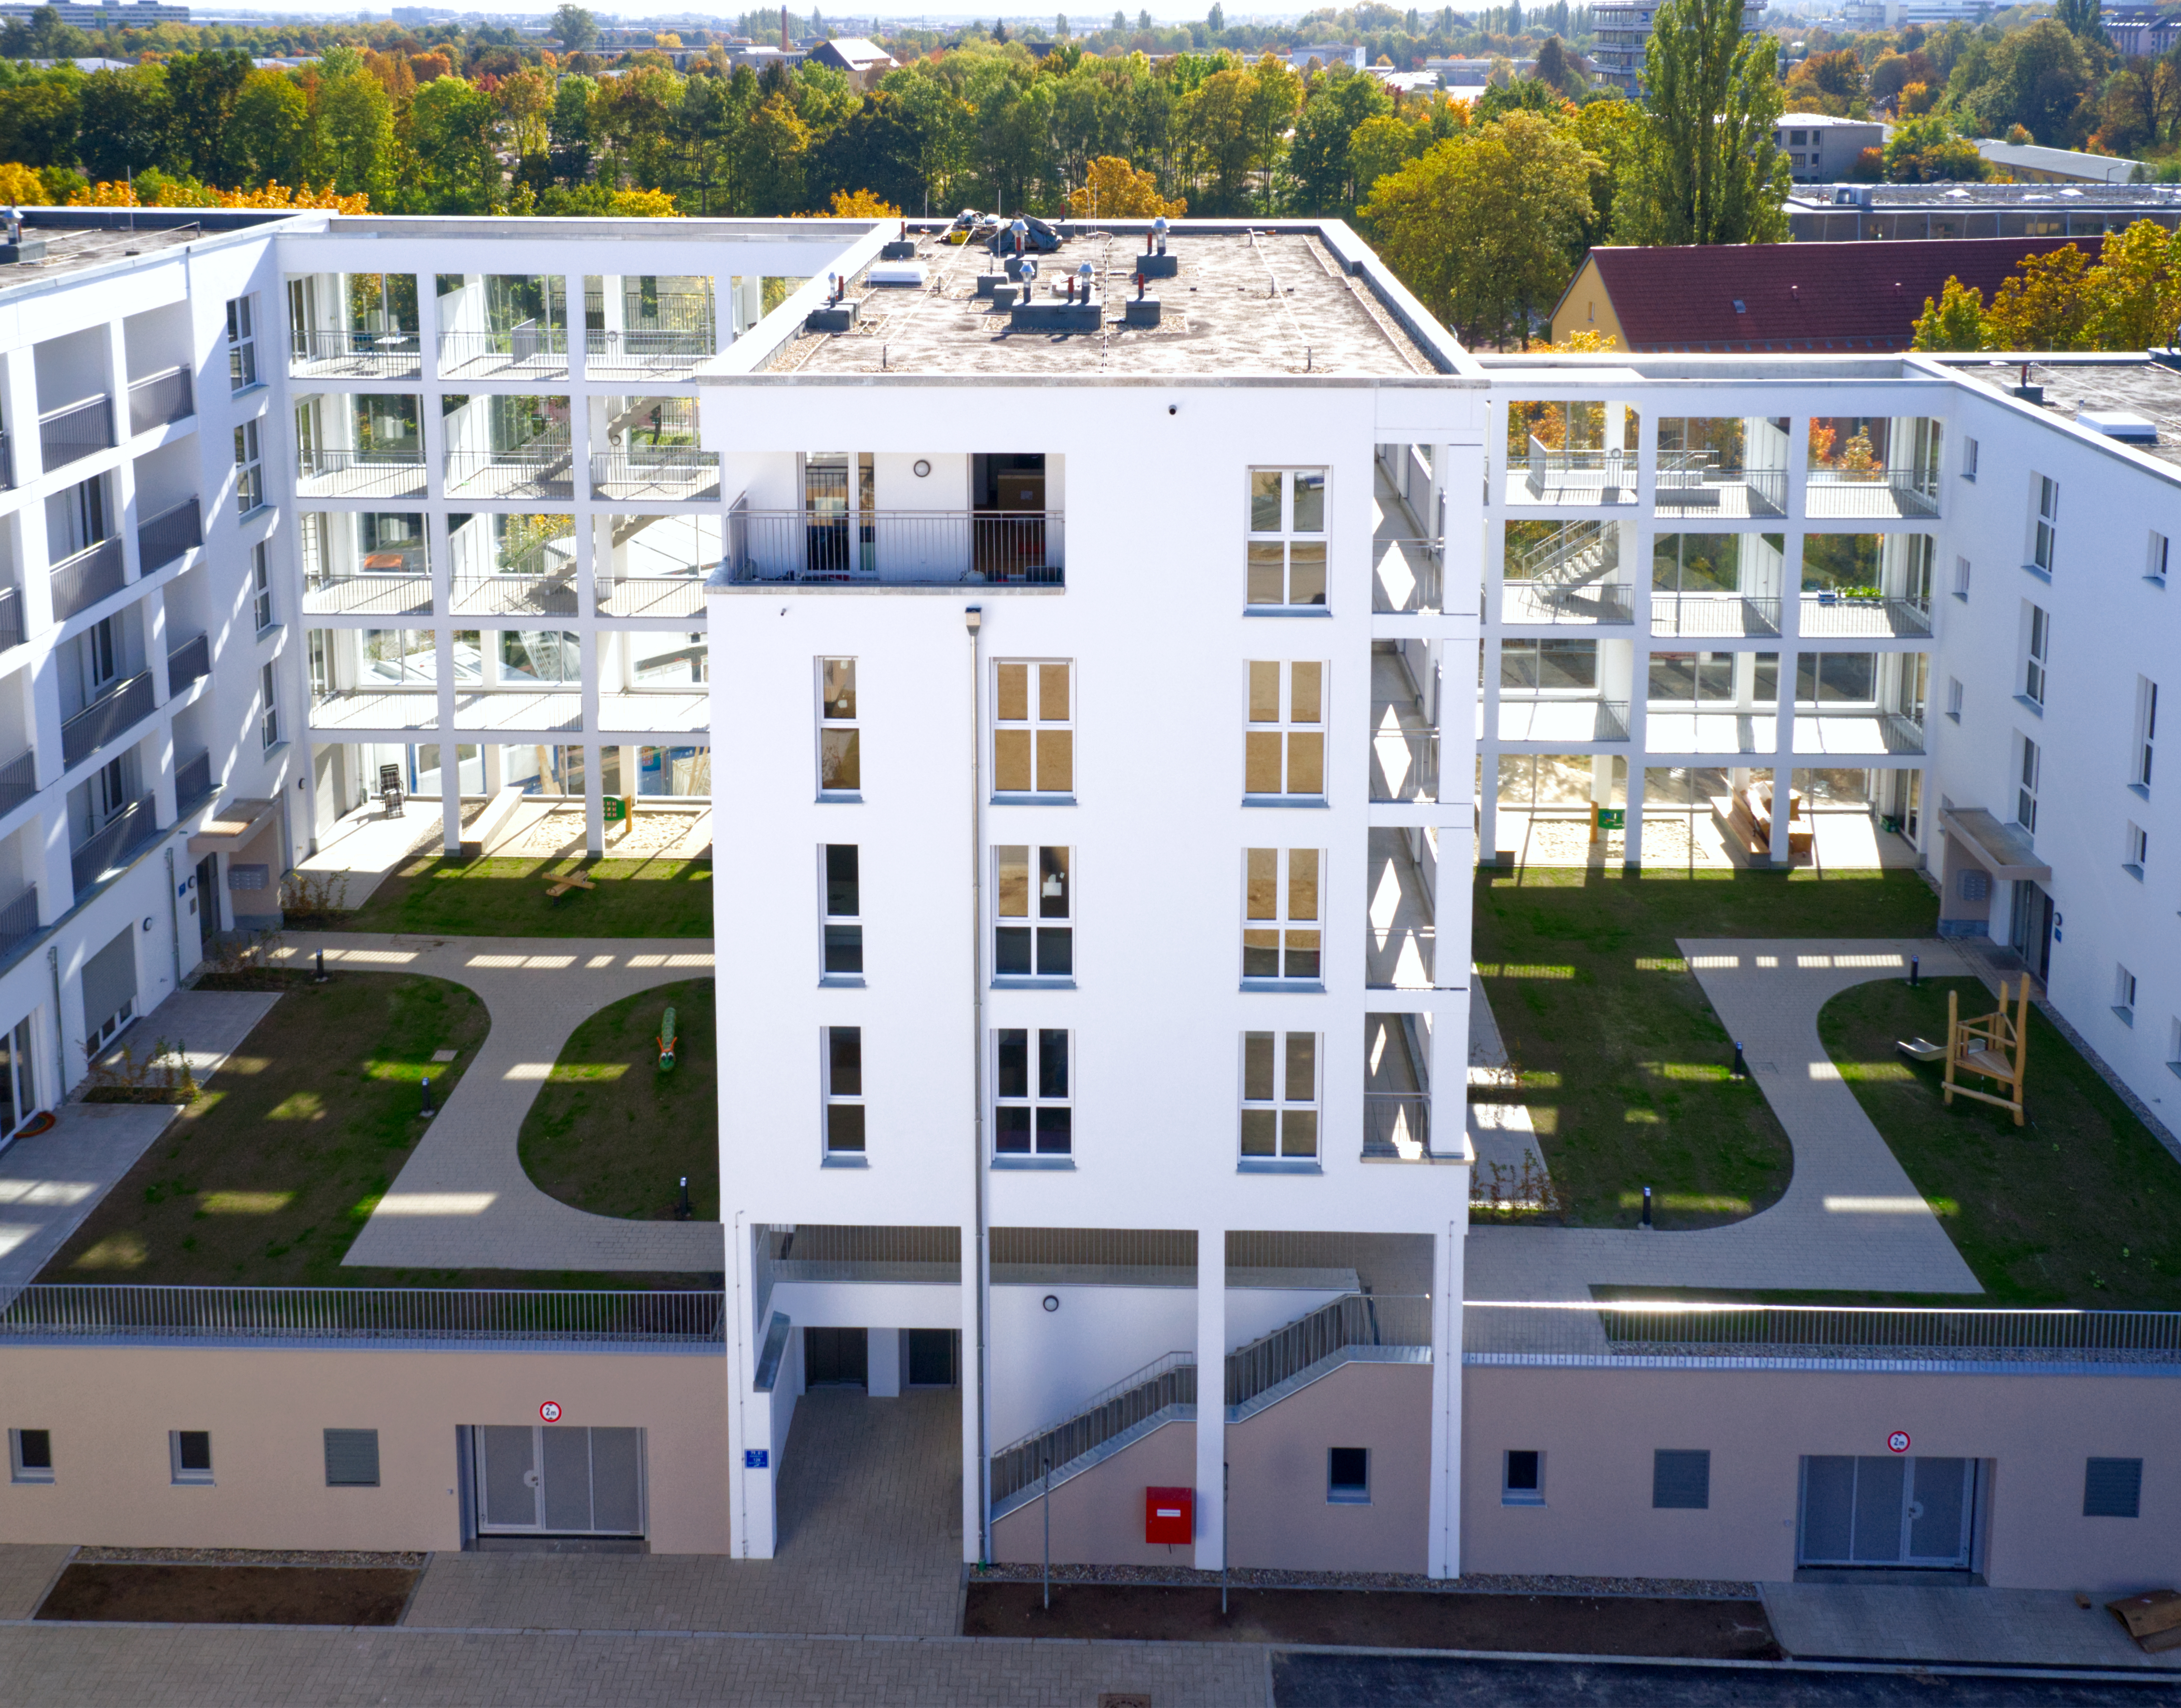 Wohnen am Kunstpark - hochwertige Eigentumswohnungen  - Bygningskonstruksjon